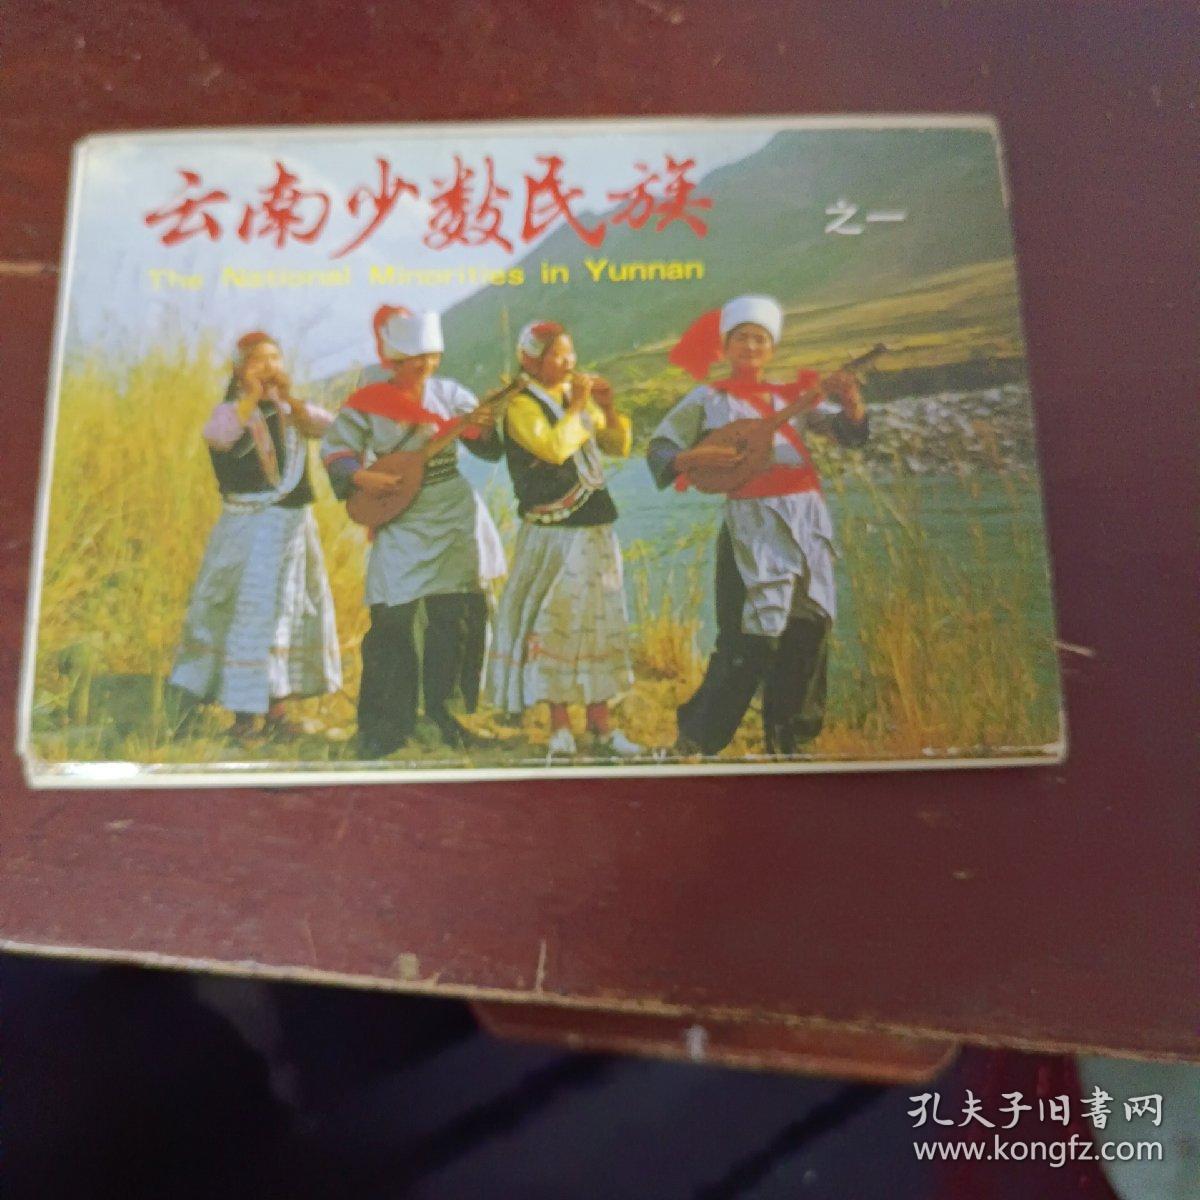 云南少数民族之一明信片(中英文)一套24枚合售